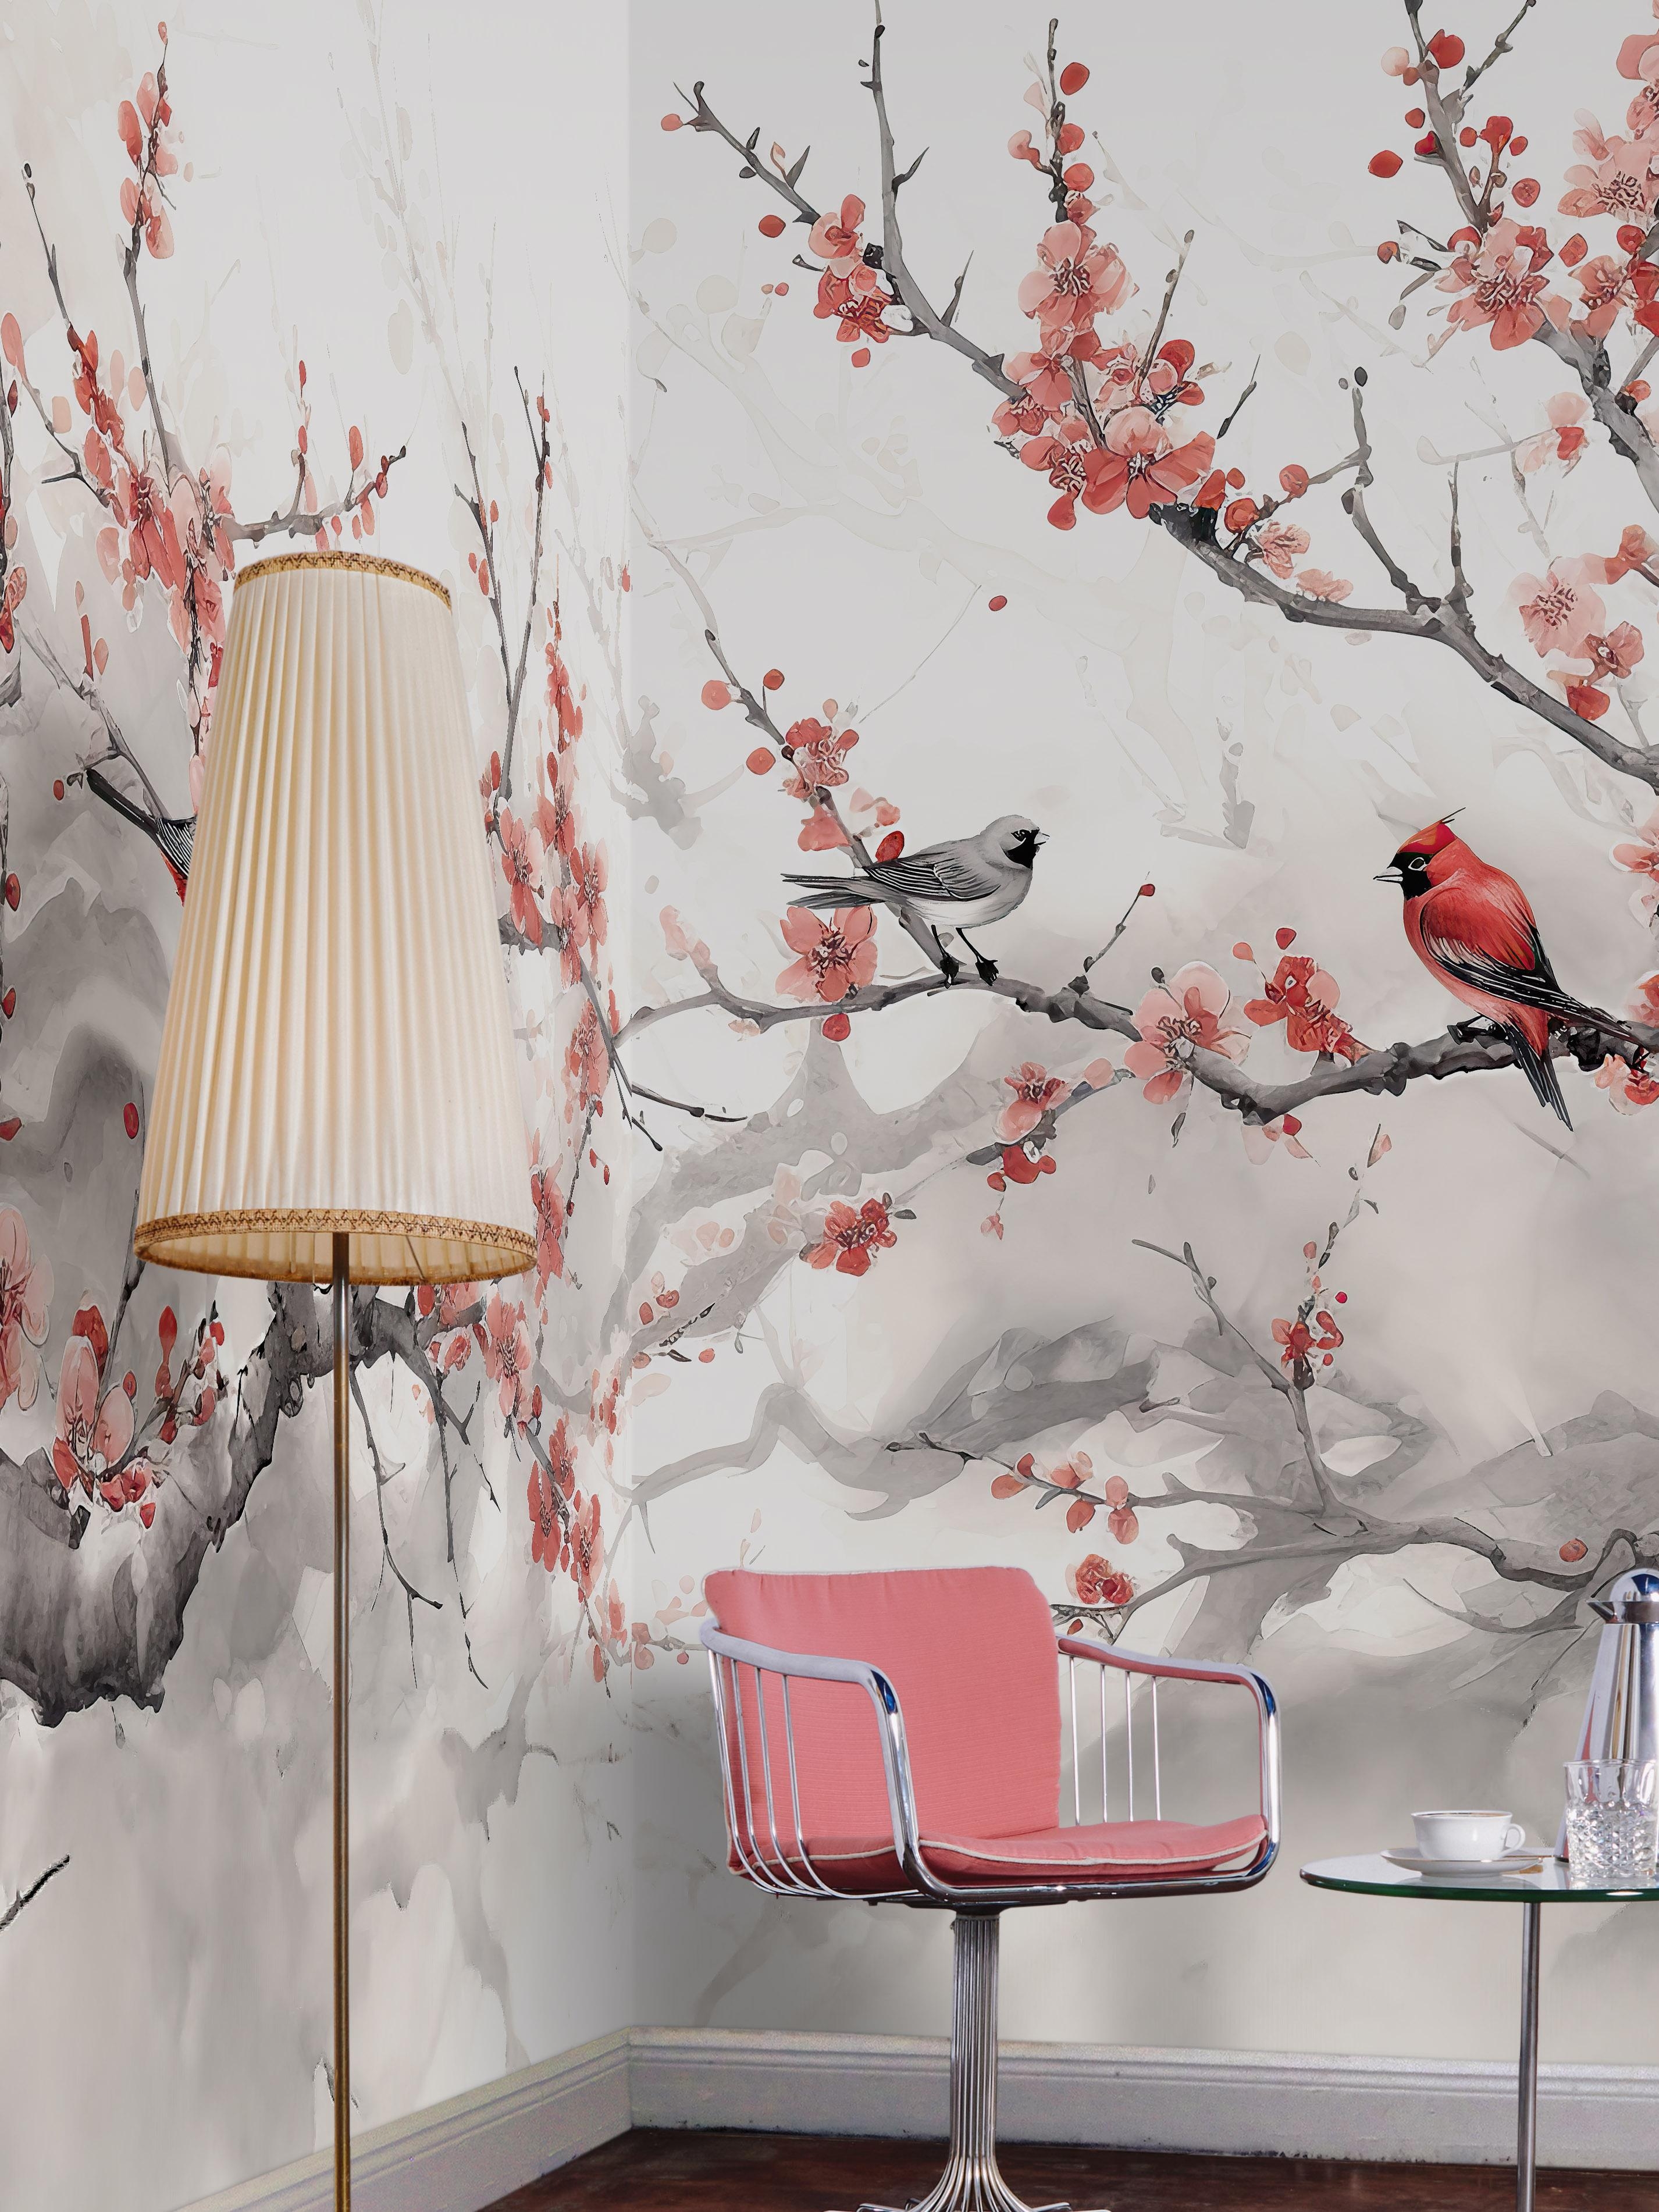 Wandfüllendes Tapetenmotiv mit Kirschblüten und Vögel im Stil japanischer Tuschemalerei.

#Tapete #Kirschblüten